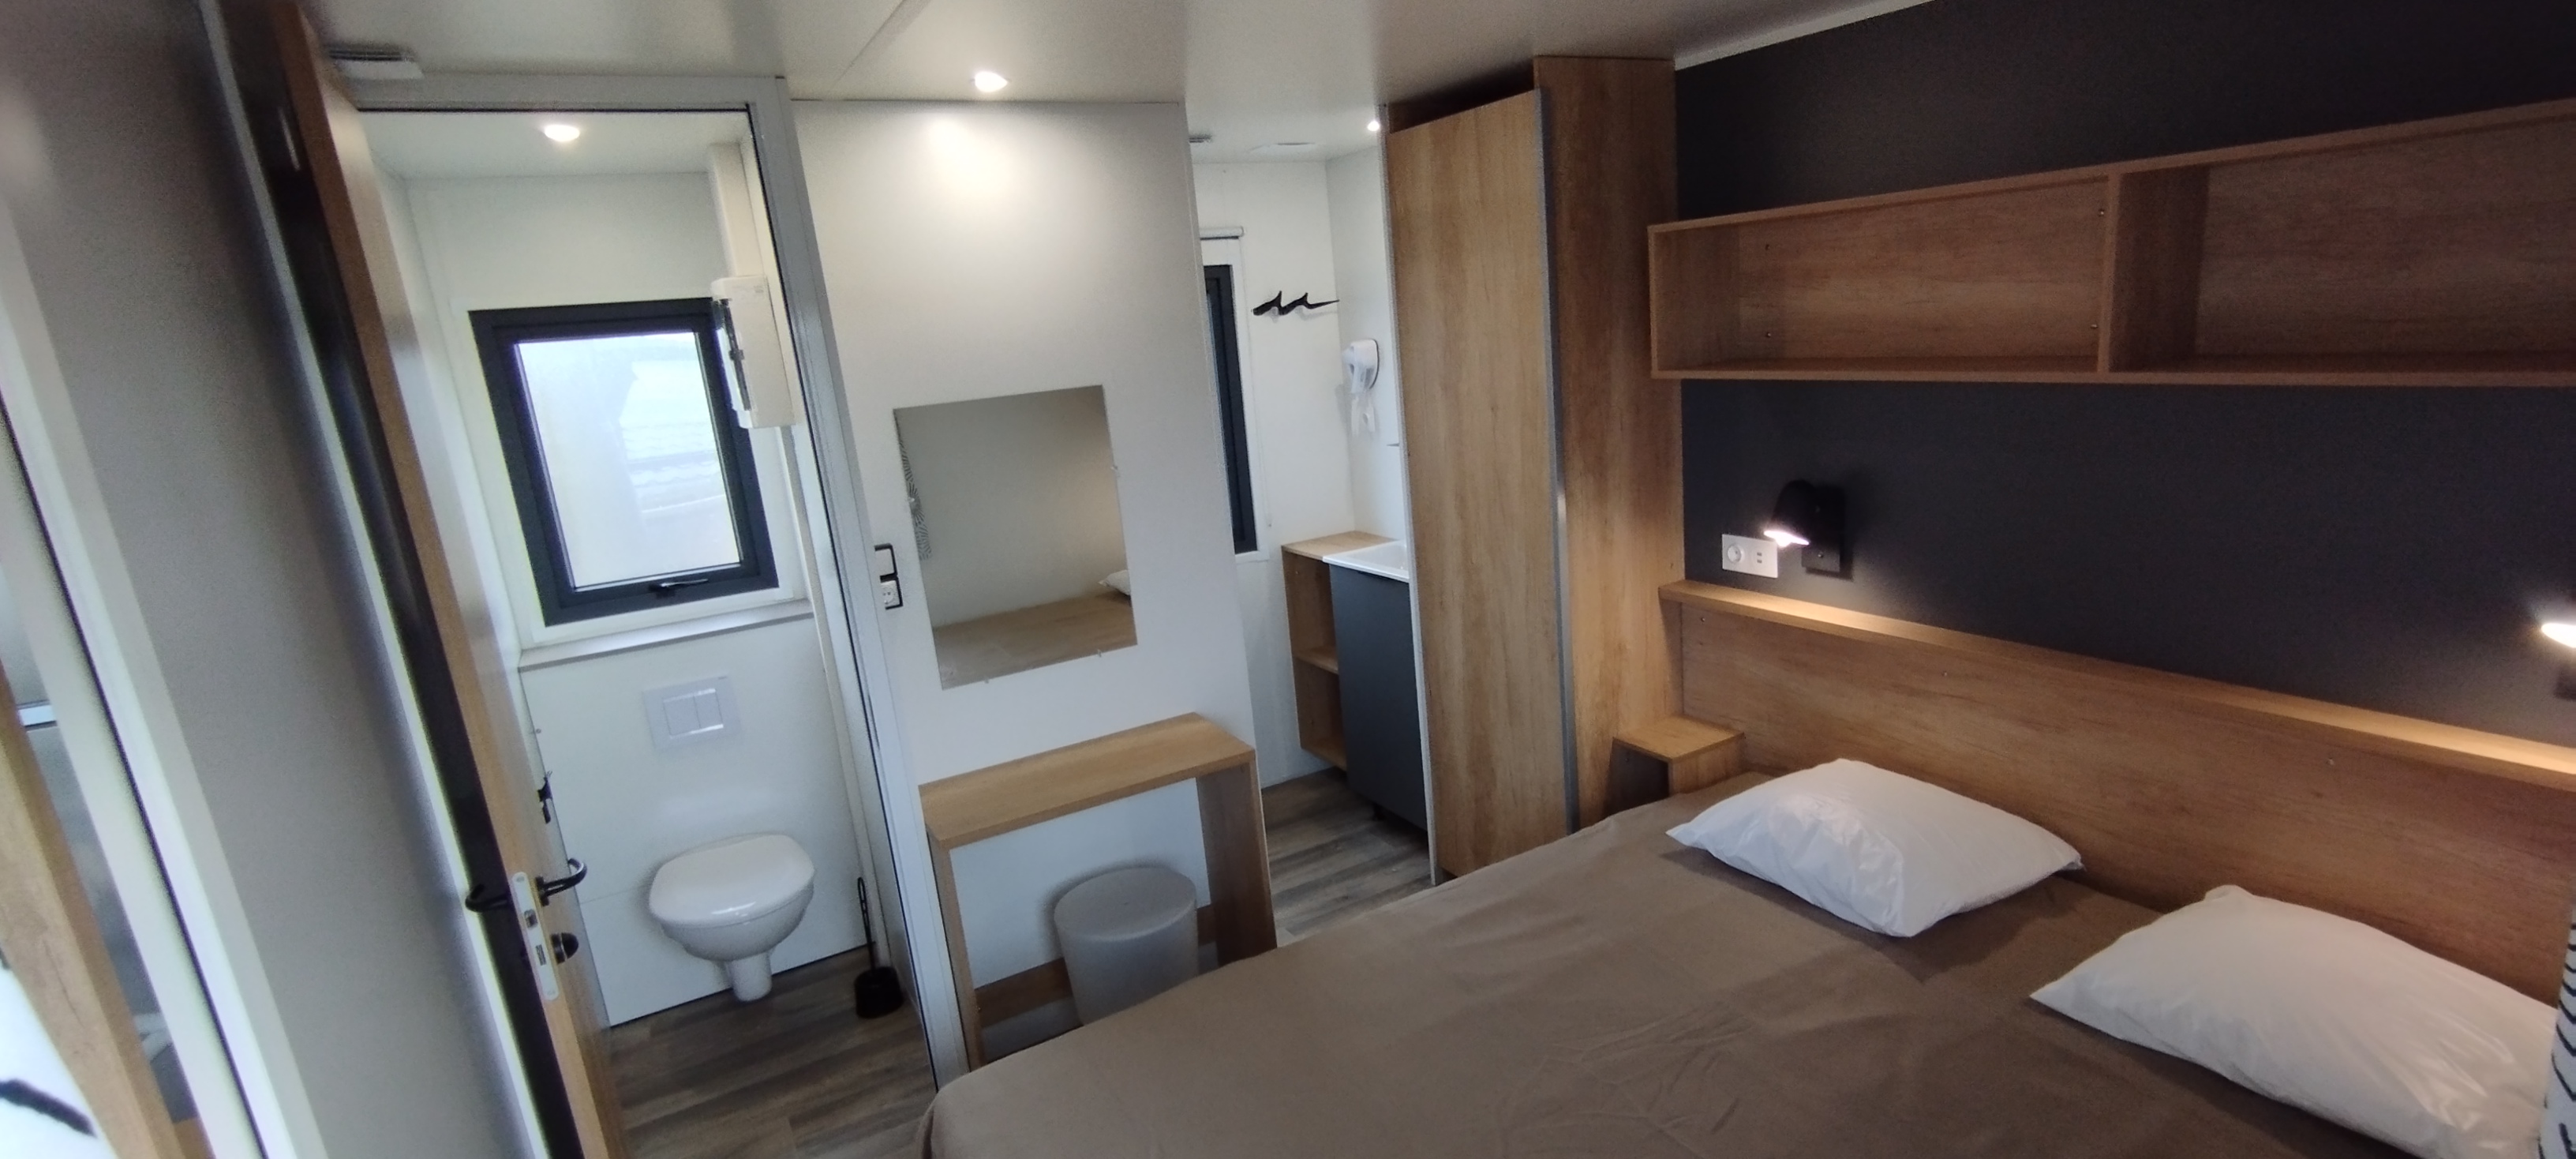 Location - Mobil Home Premium Argoat - Camping Bellevue Mer